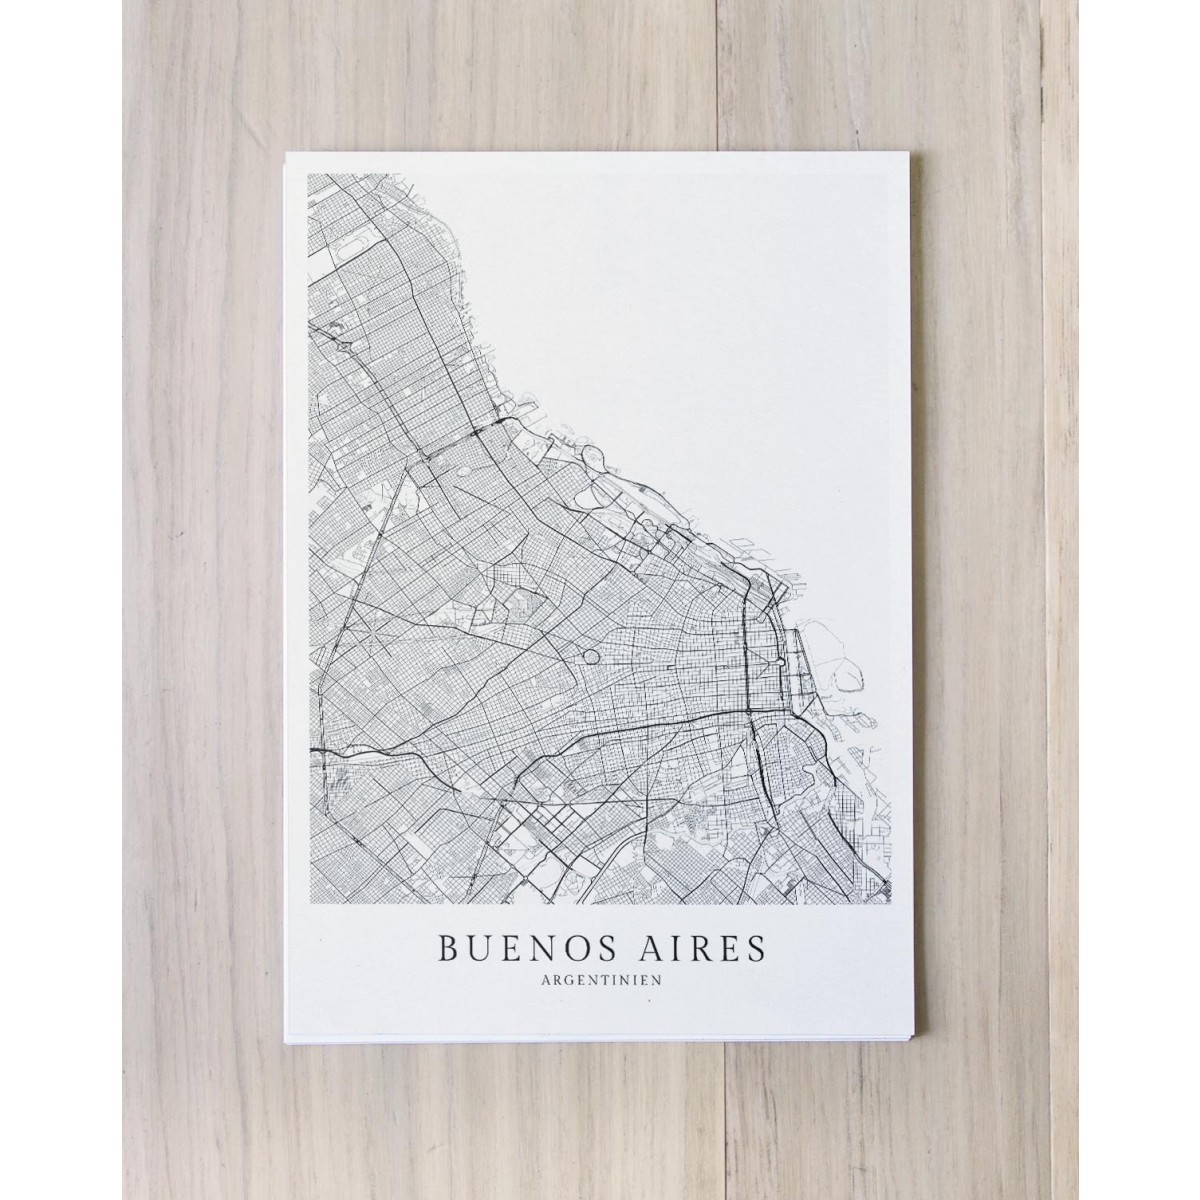 Karte BUENOS AIRES als Print von Skanemarie +++ Geschenkidee zu Weihnachten